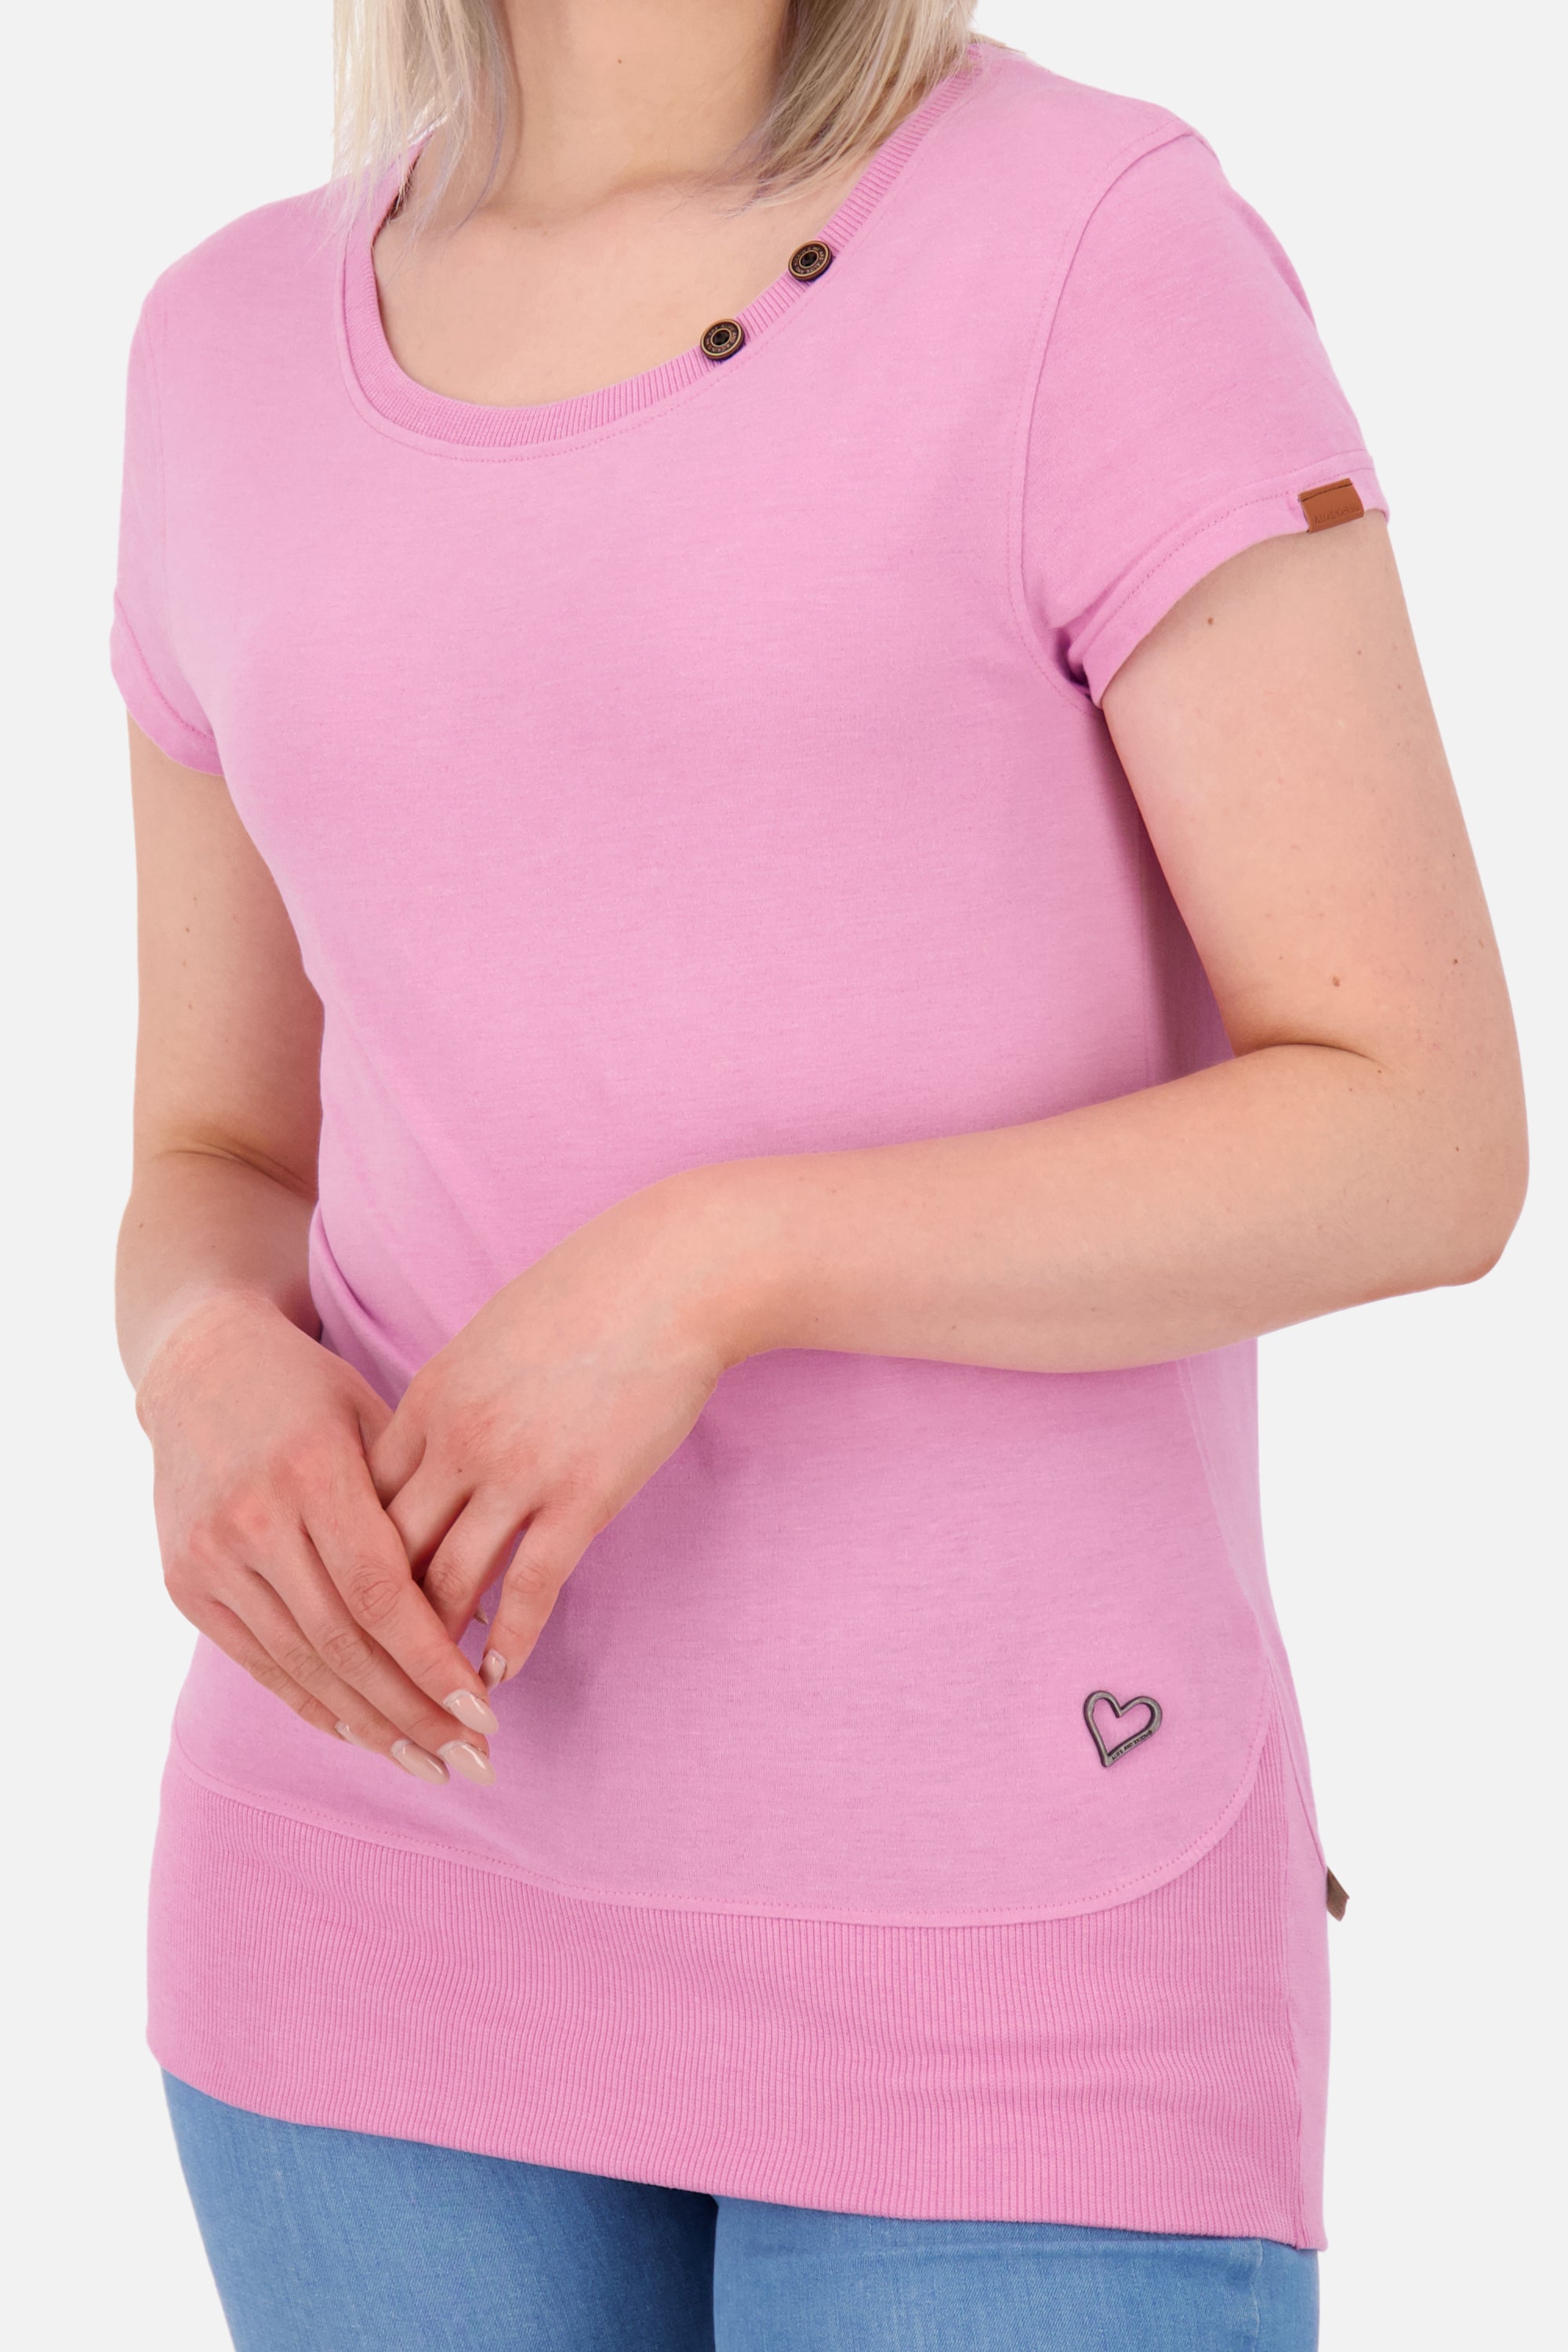 CocoAK A T-Shirt von Alife and Kickin: Farbenfroh und modisch Pink